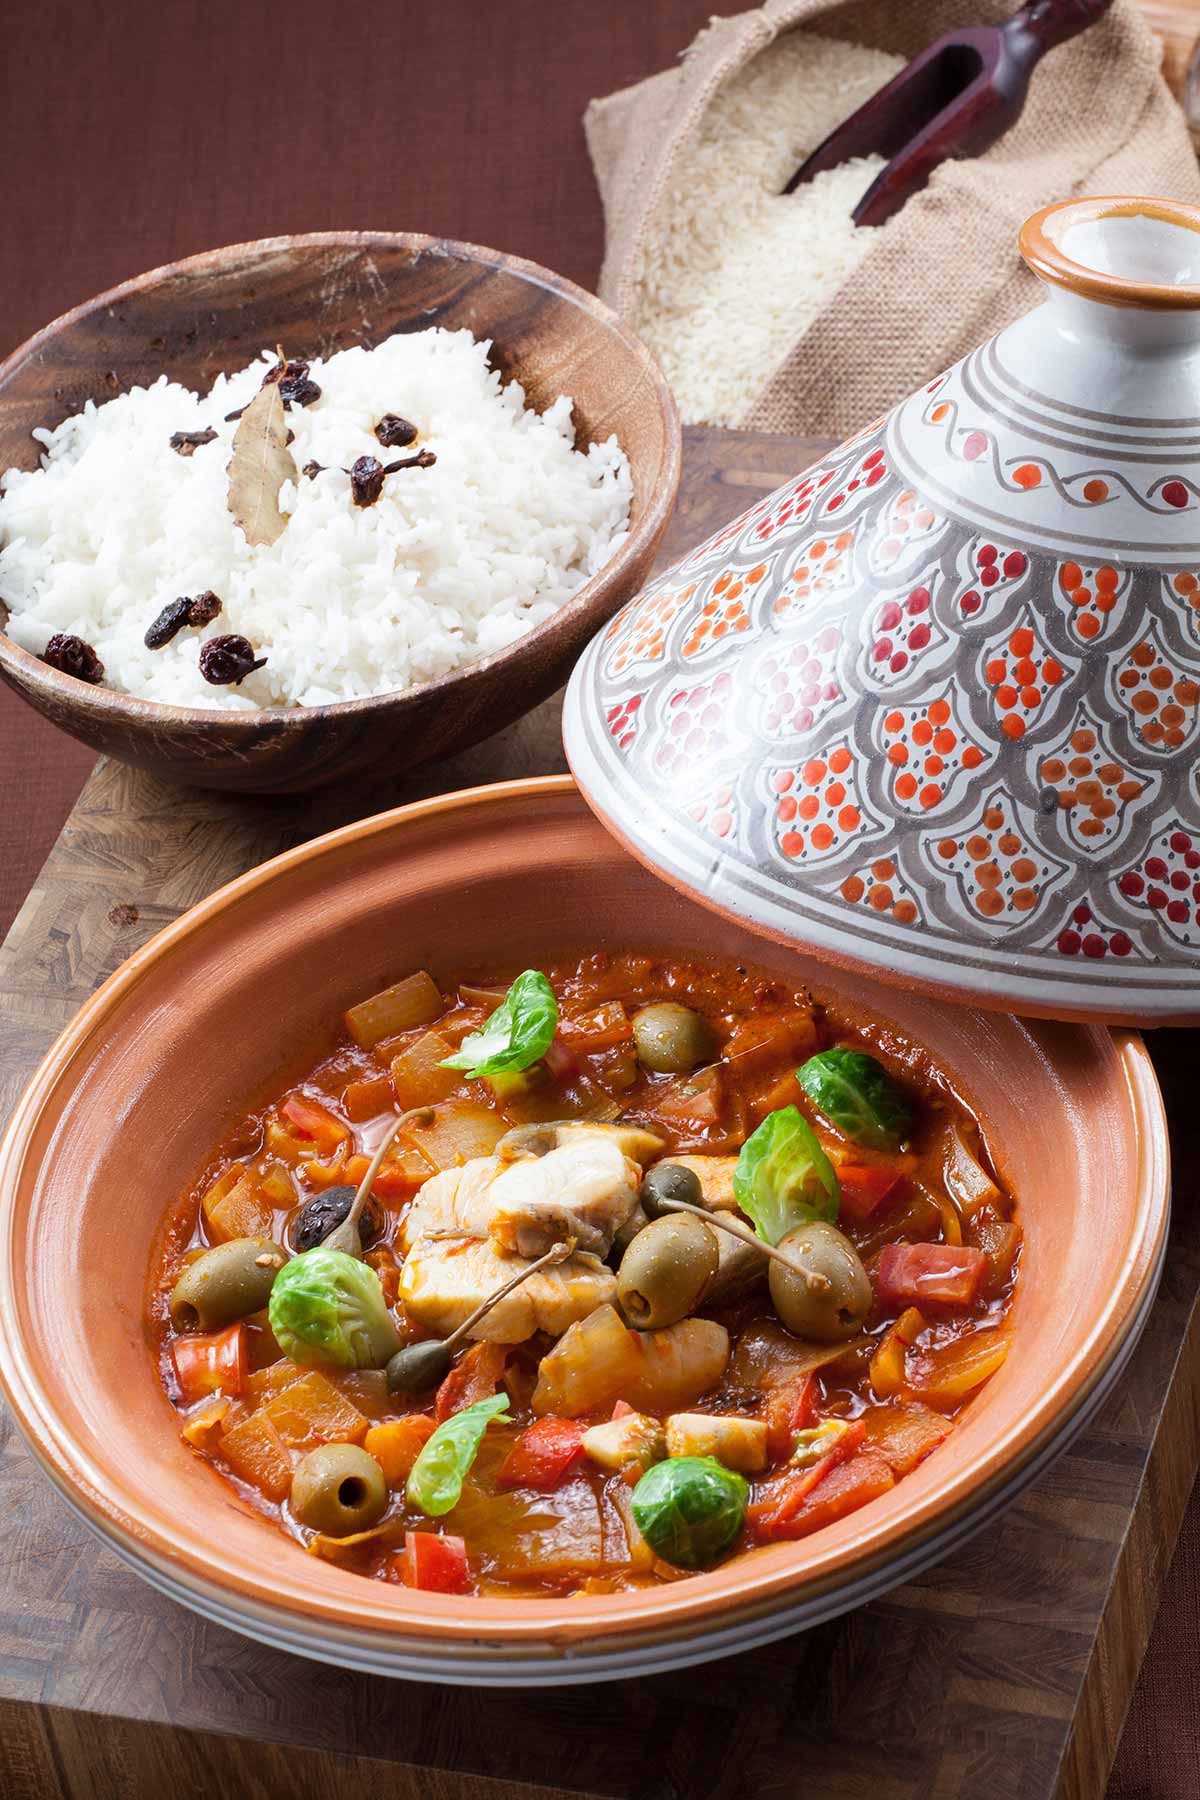 摩洛哥风味炖鲈鱼和香料饭 pic